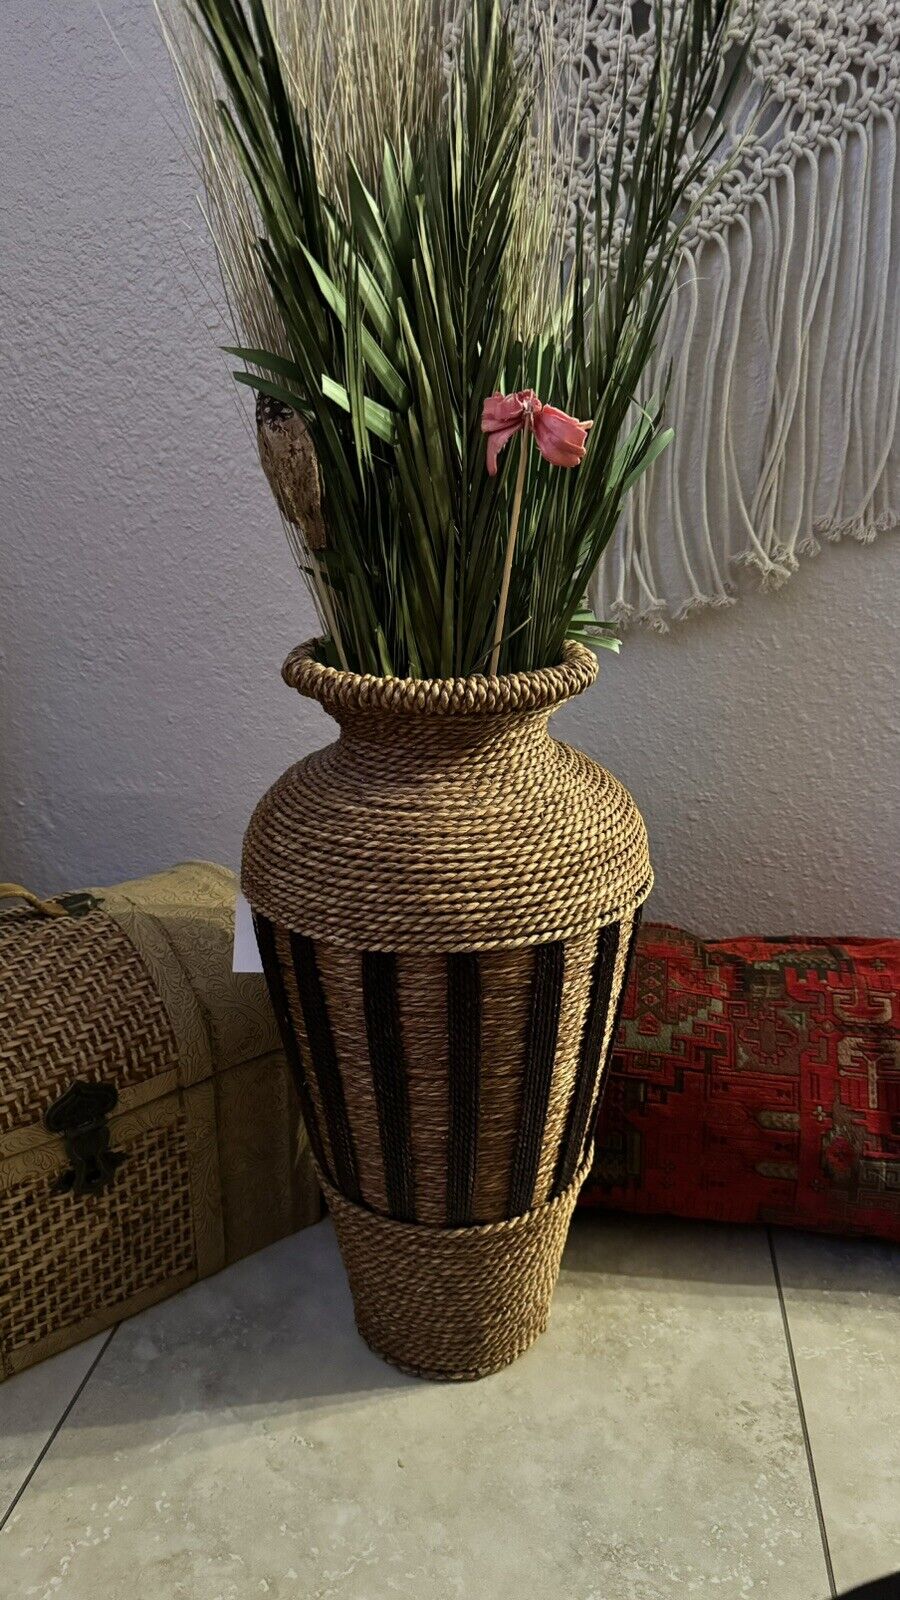 MCM VTG LG Wicker Floor Vase Urn Boho 20” Tall Rattan Flower Basket Shabby Chic